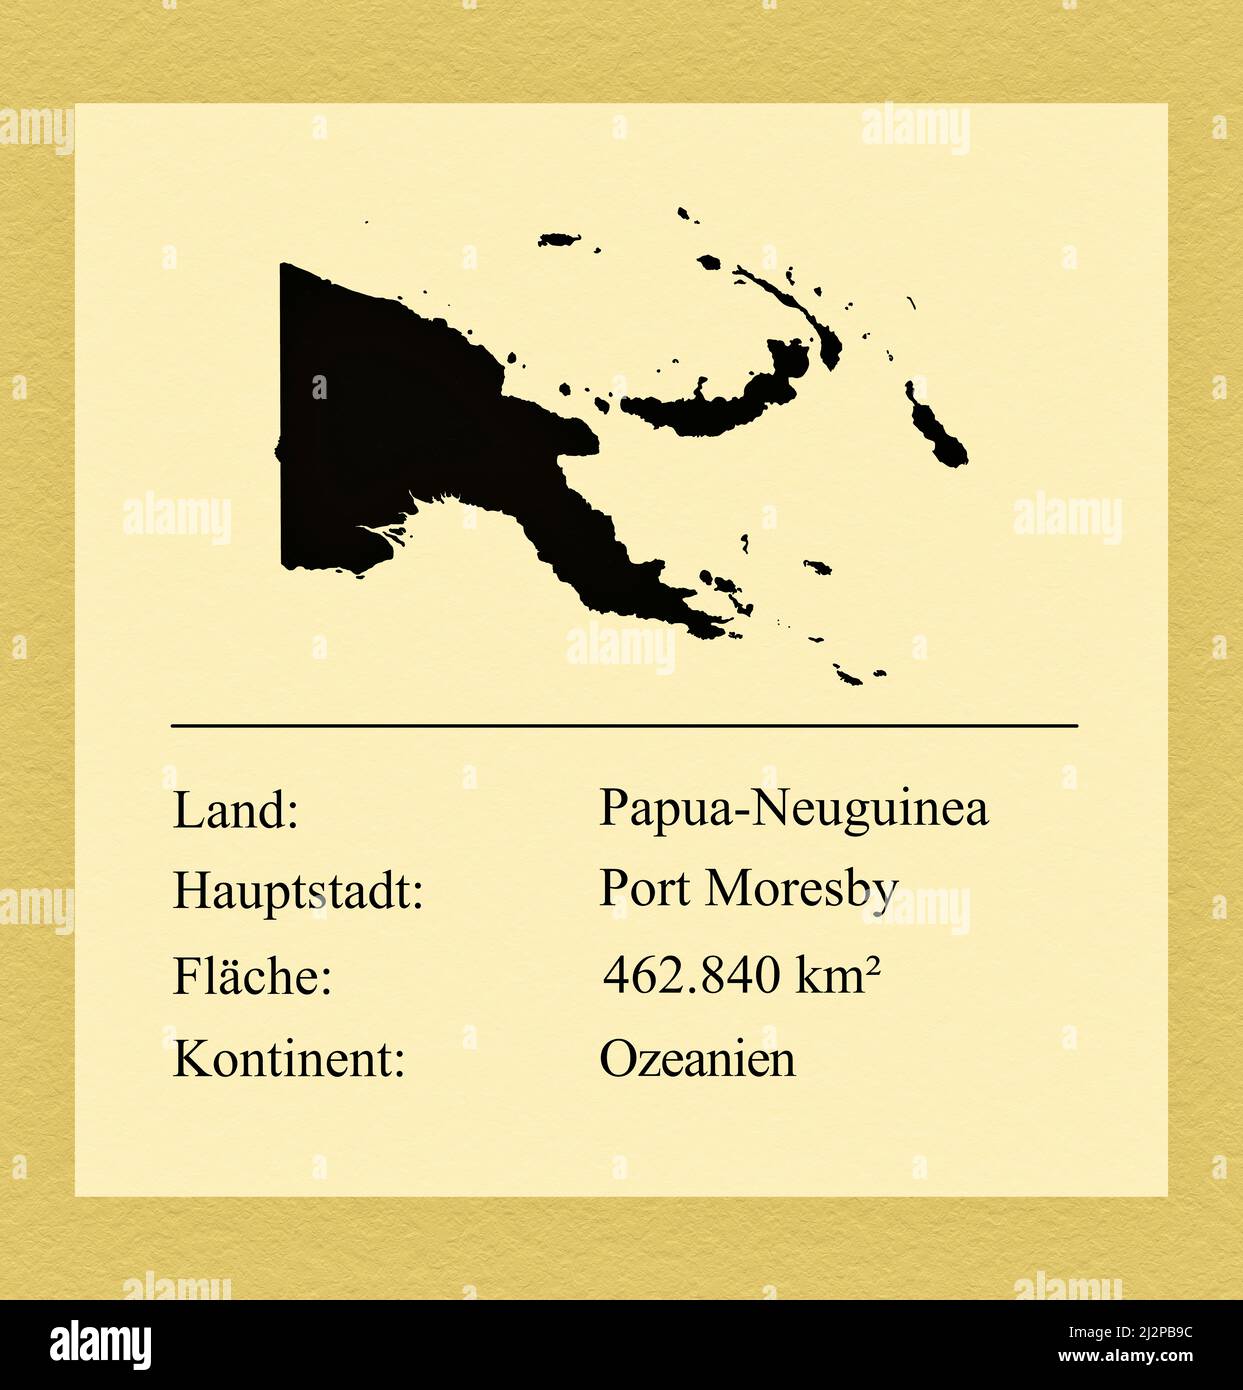 Umrisse des Landes Papua-Neuguinea, darunter ein kleiner Steckbrief mit Ländernamen, Hauptstadt, Fläche und Kontinent Stock Photo